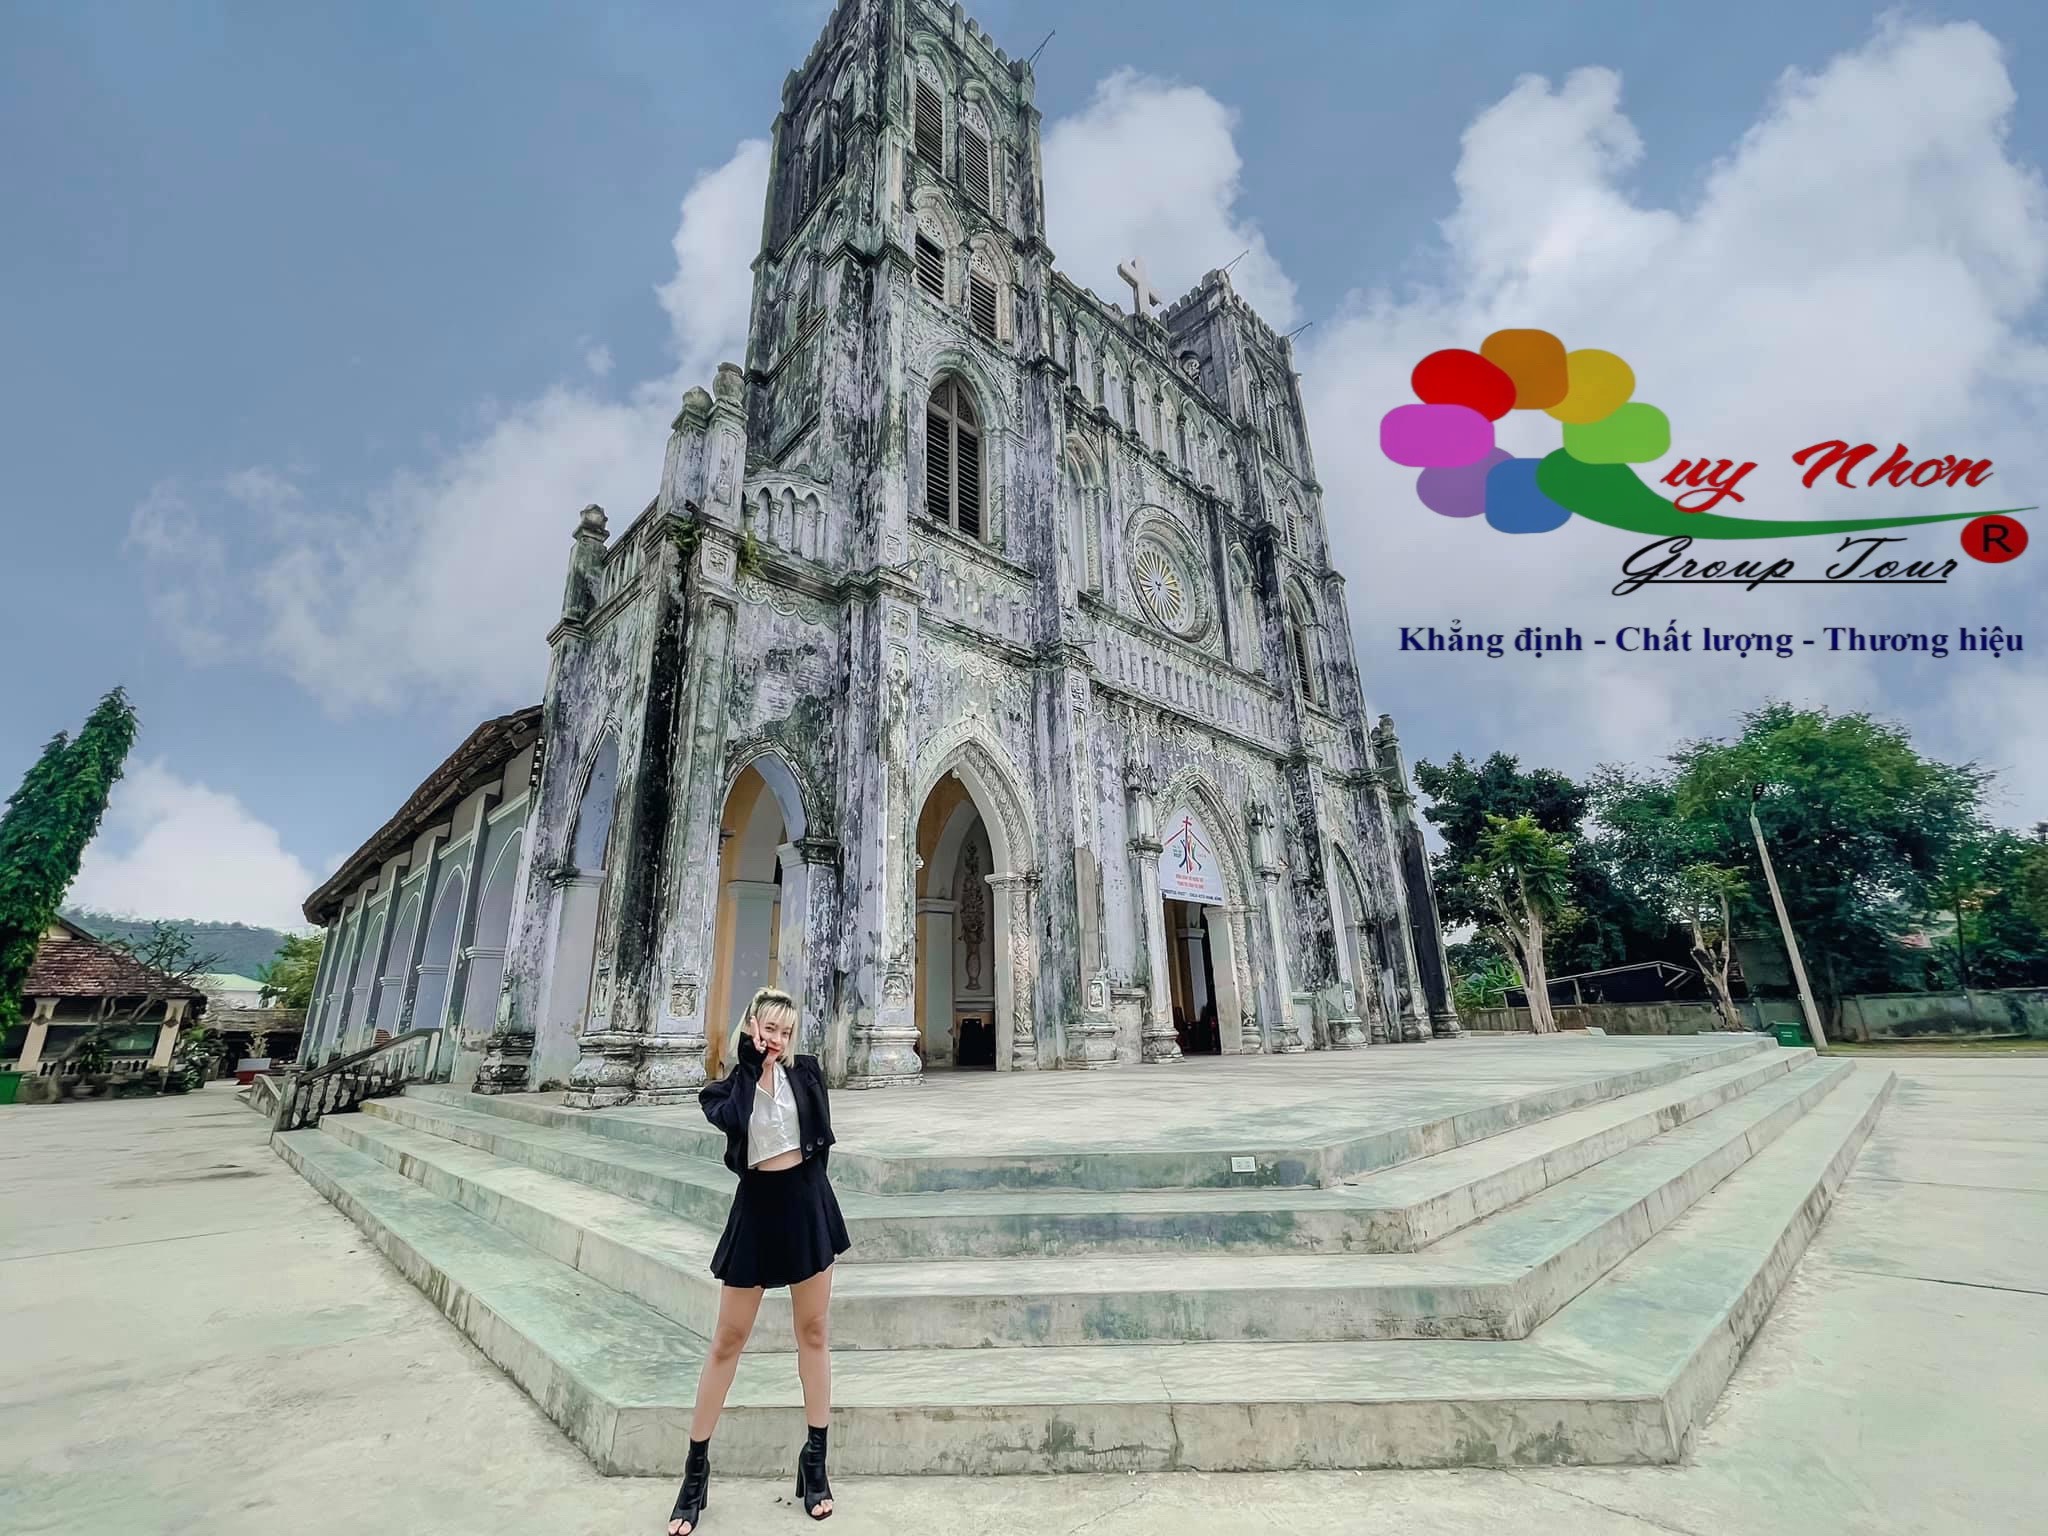 Tour Phú Yên Quy Nhơn 1 ngày: Về mảnh đất “Hoa vàng cỏ xanh”